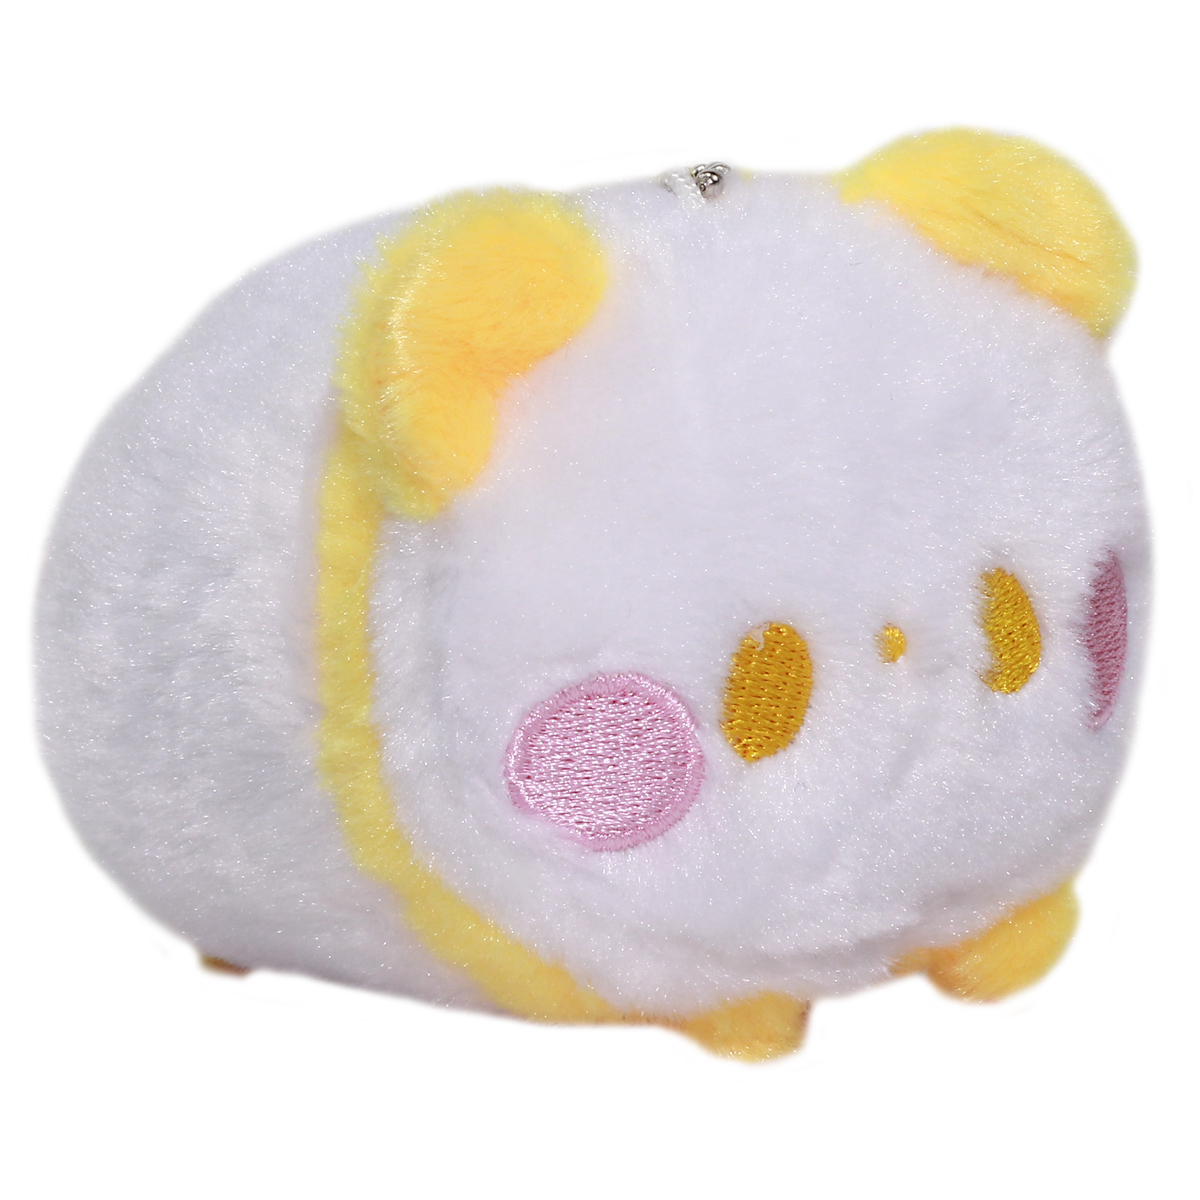 Super Soft Mochii Cute Panda Plush Keychain Yellow White 3.5